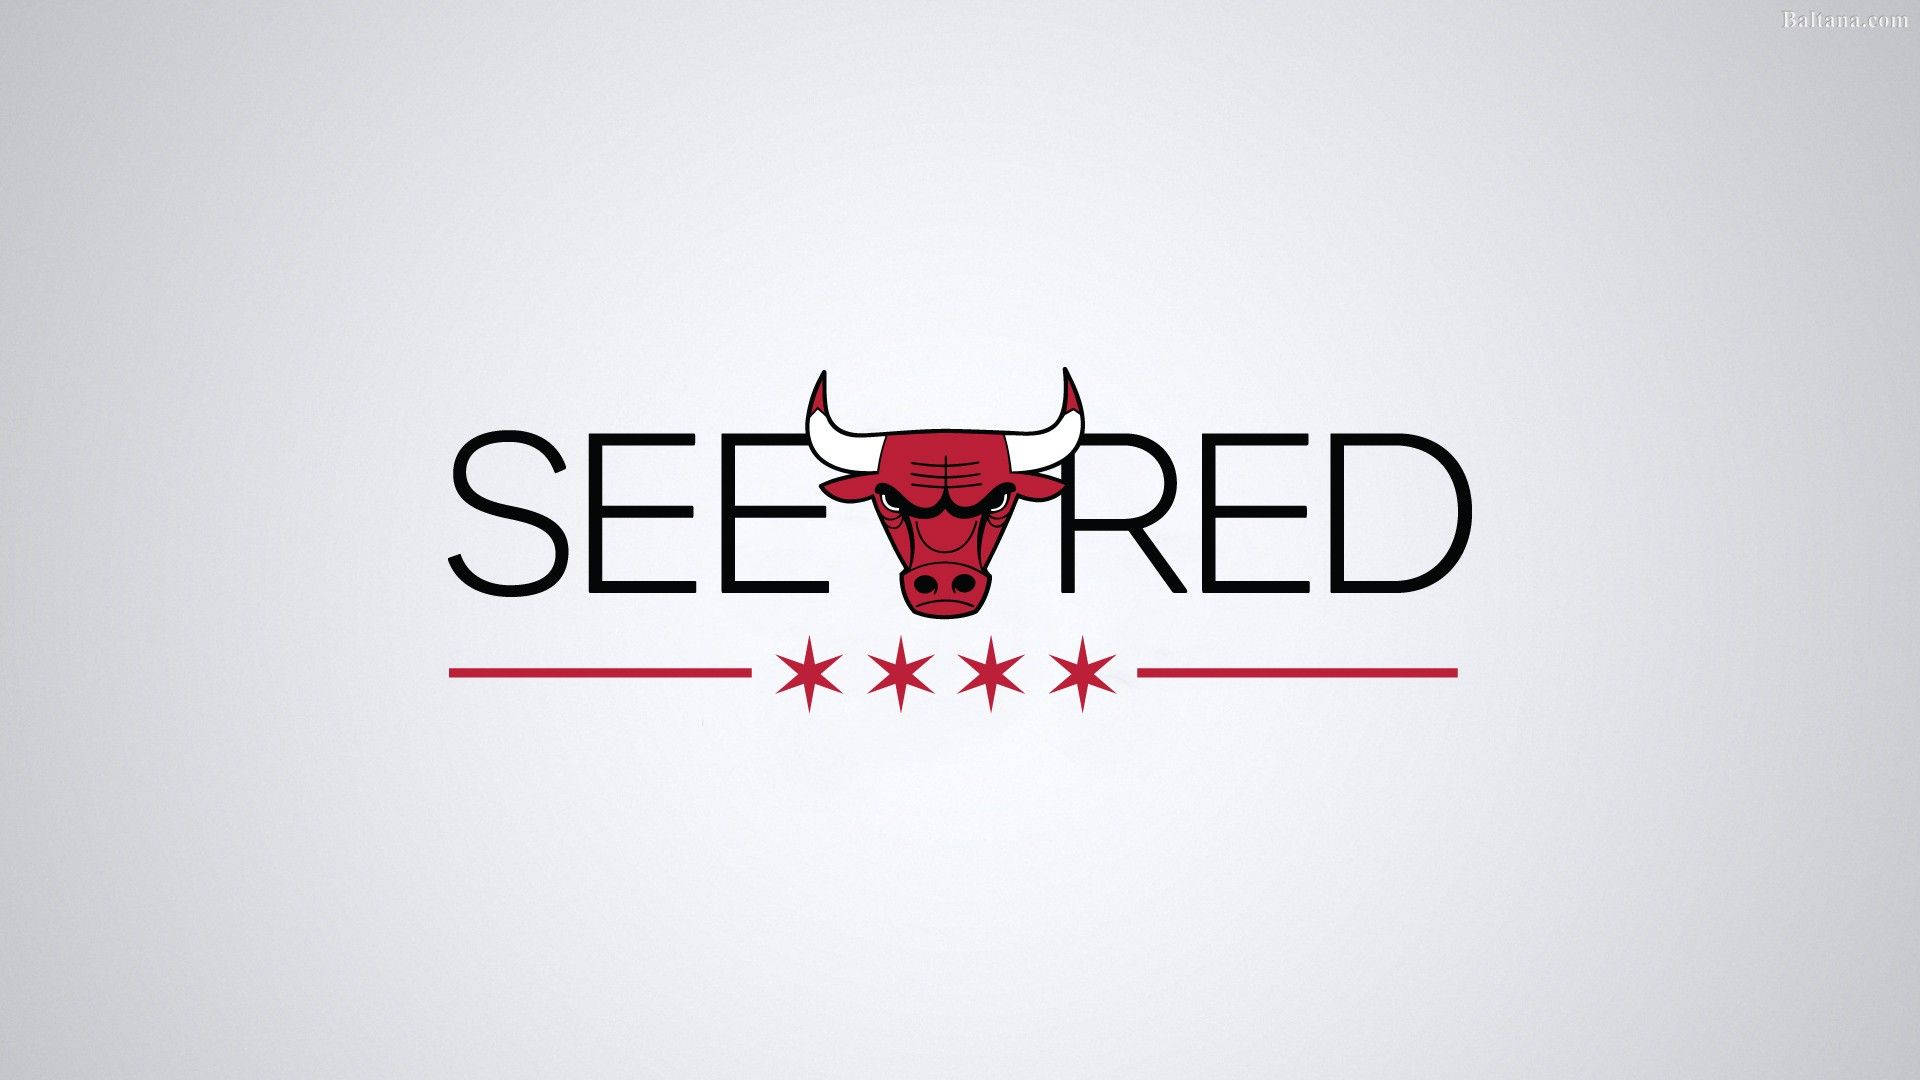 Chicago Bulls All White Logo Background